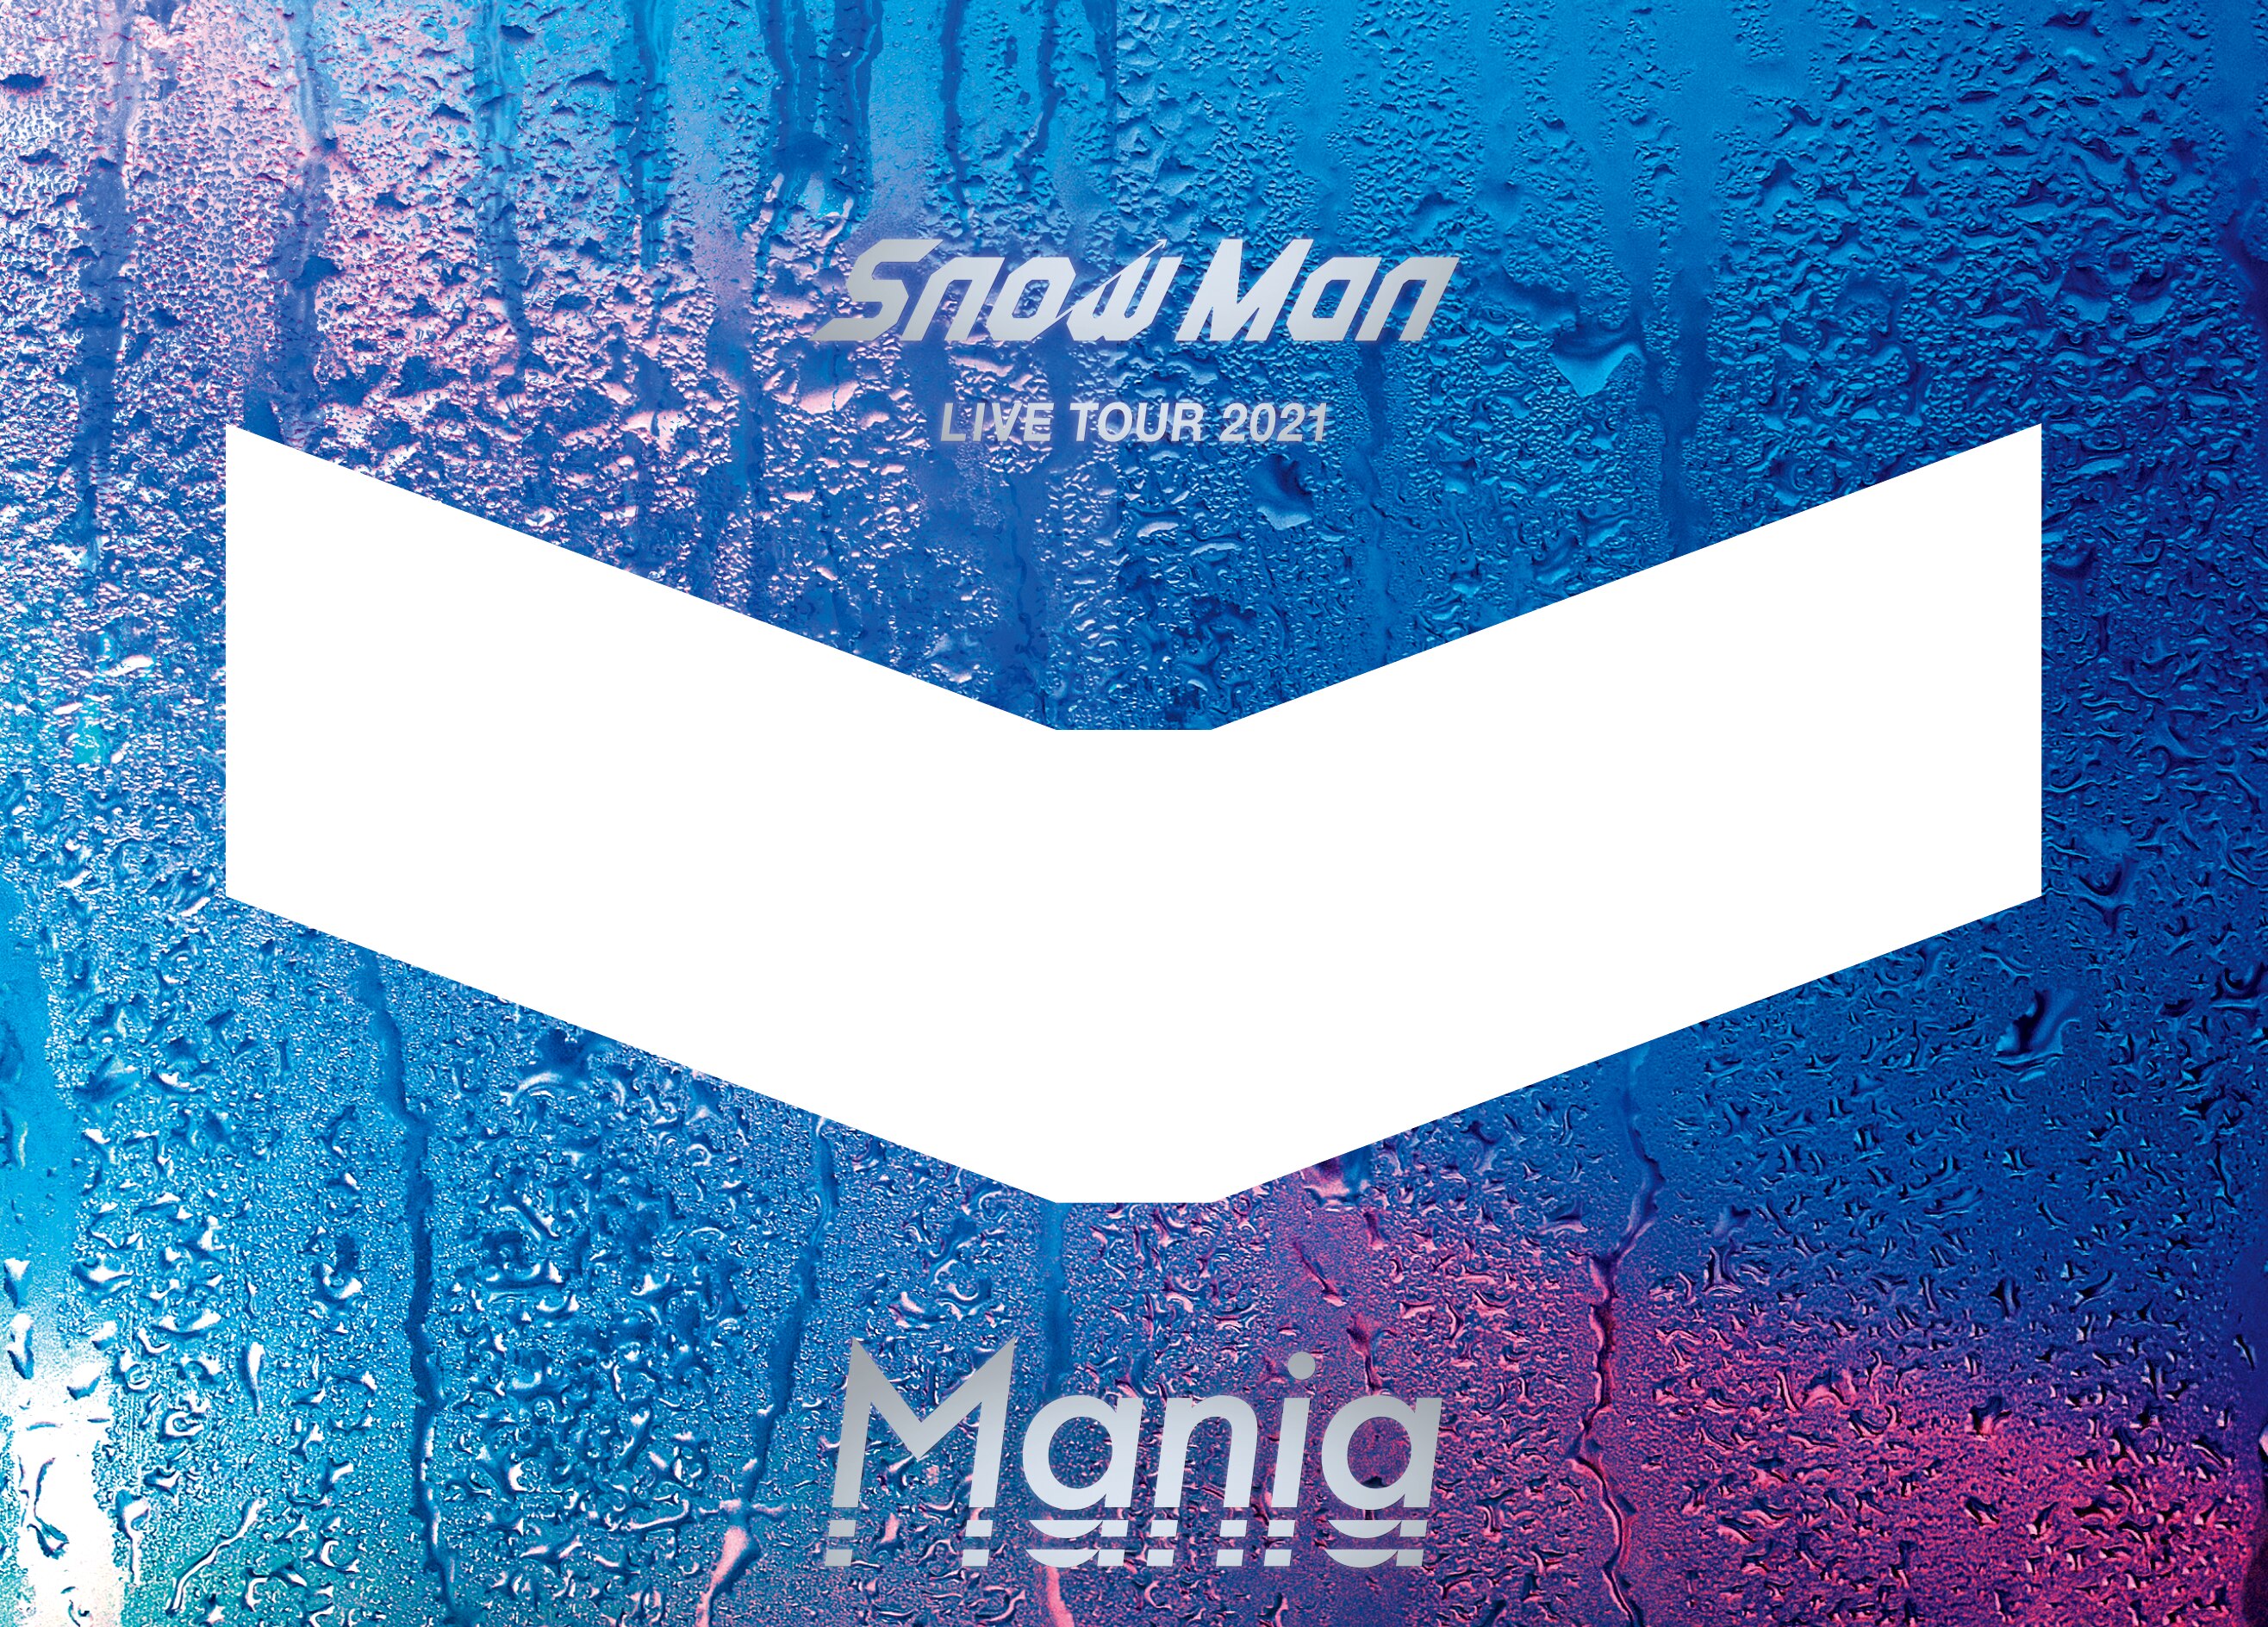 3299円 最高級 Snow Man LIVE TOUR 2021 Mania 初回盤 初回4DVD